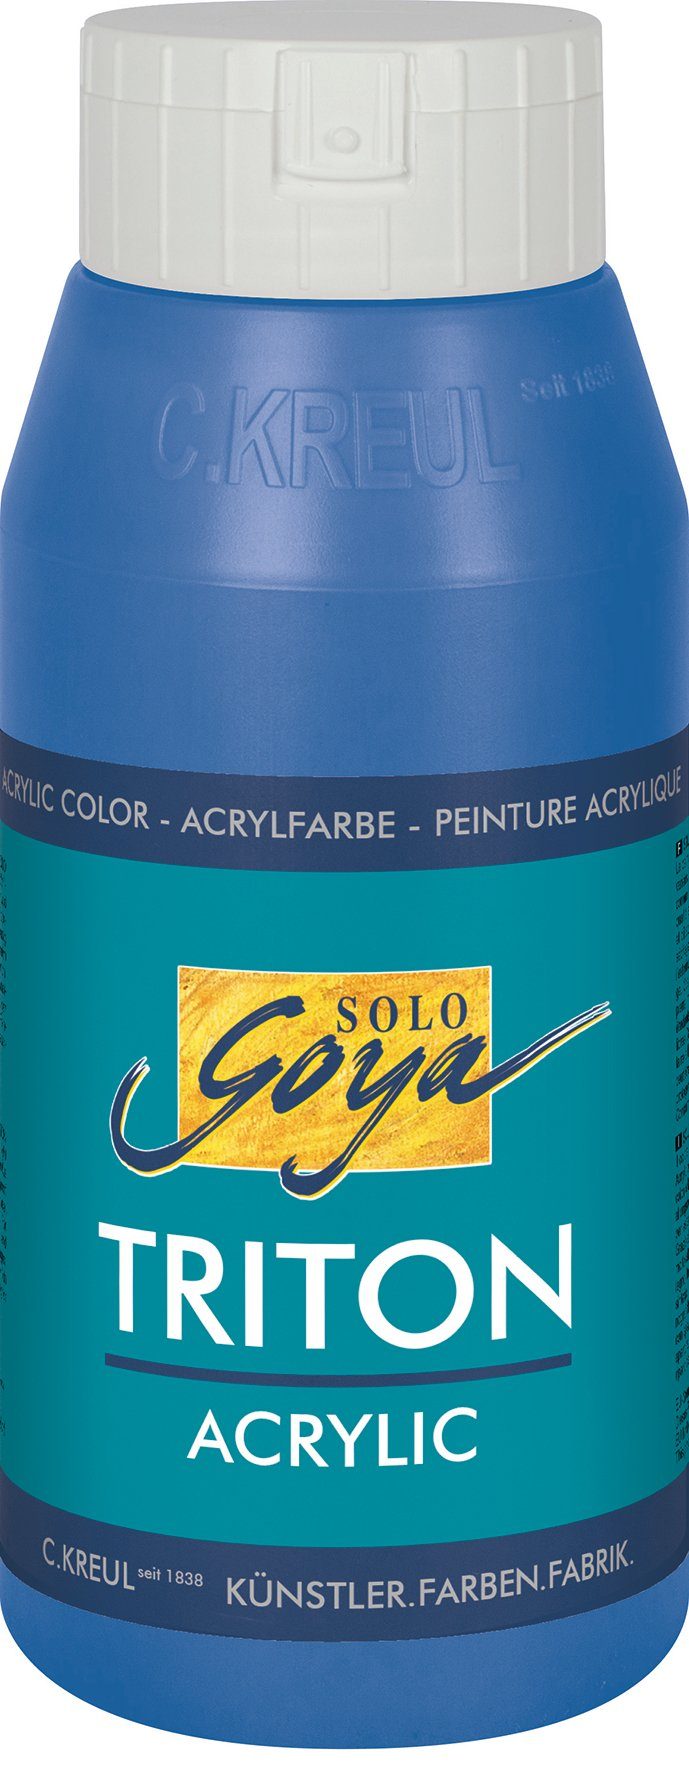 750 Triton Coelinblau Acrylic, Acrylfarbe Solo ml Kreul Goya